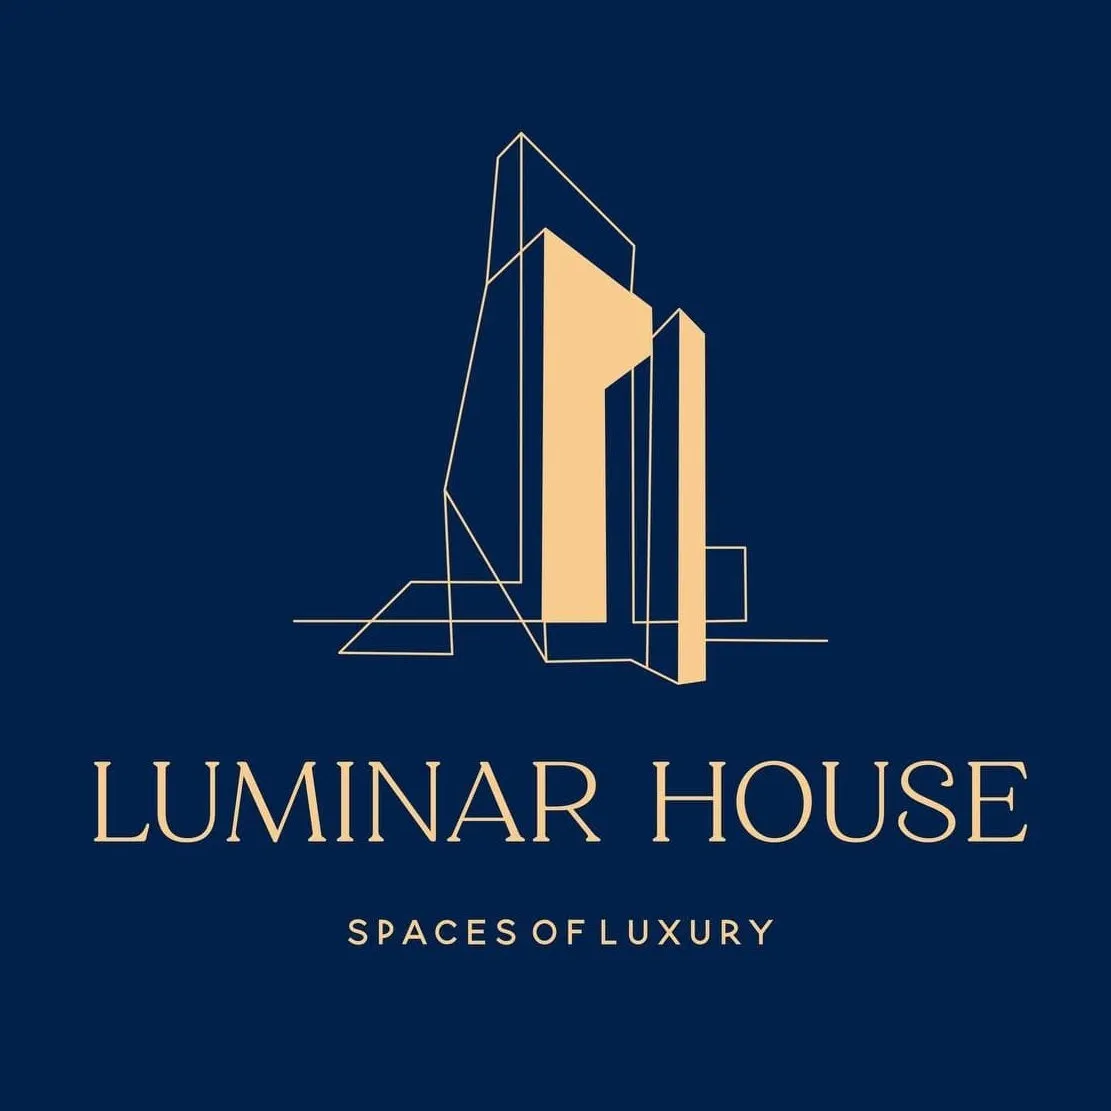 Luminar House